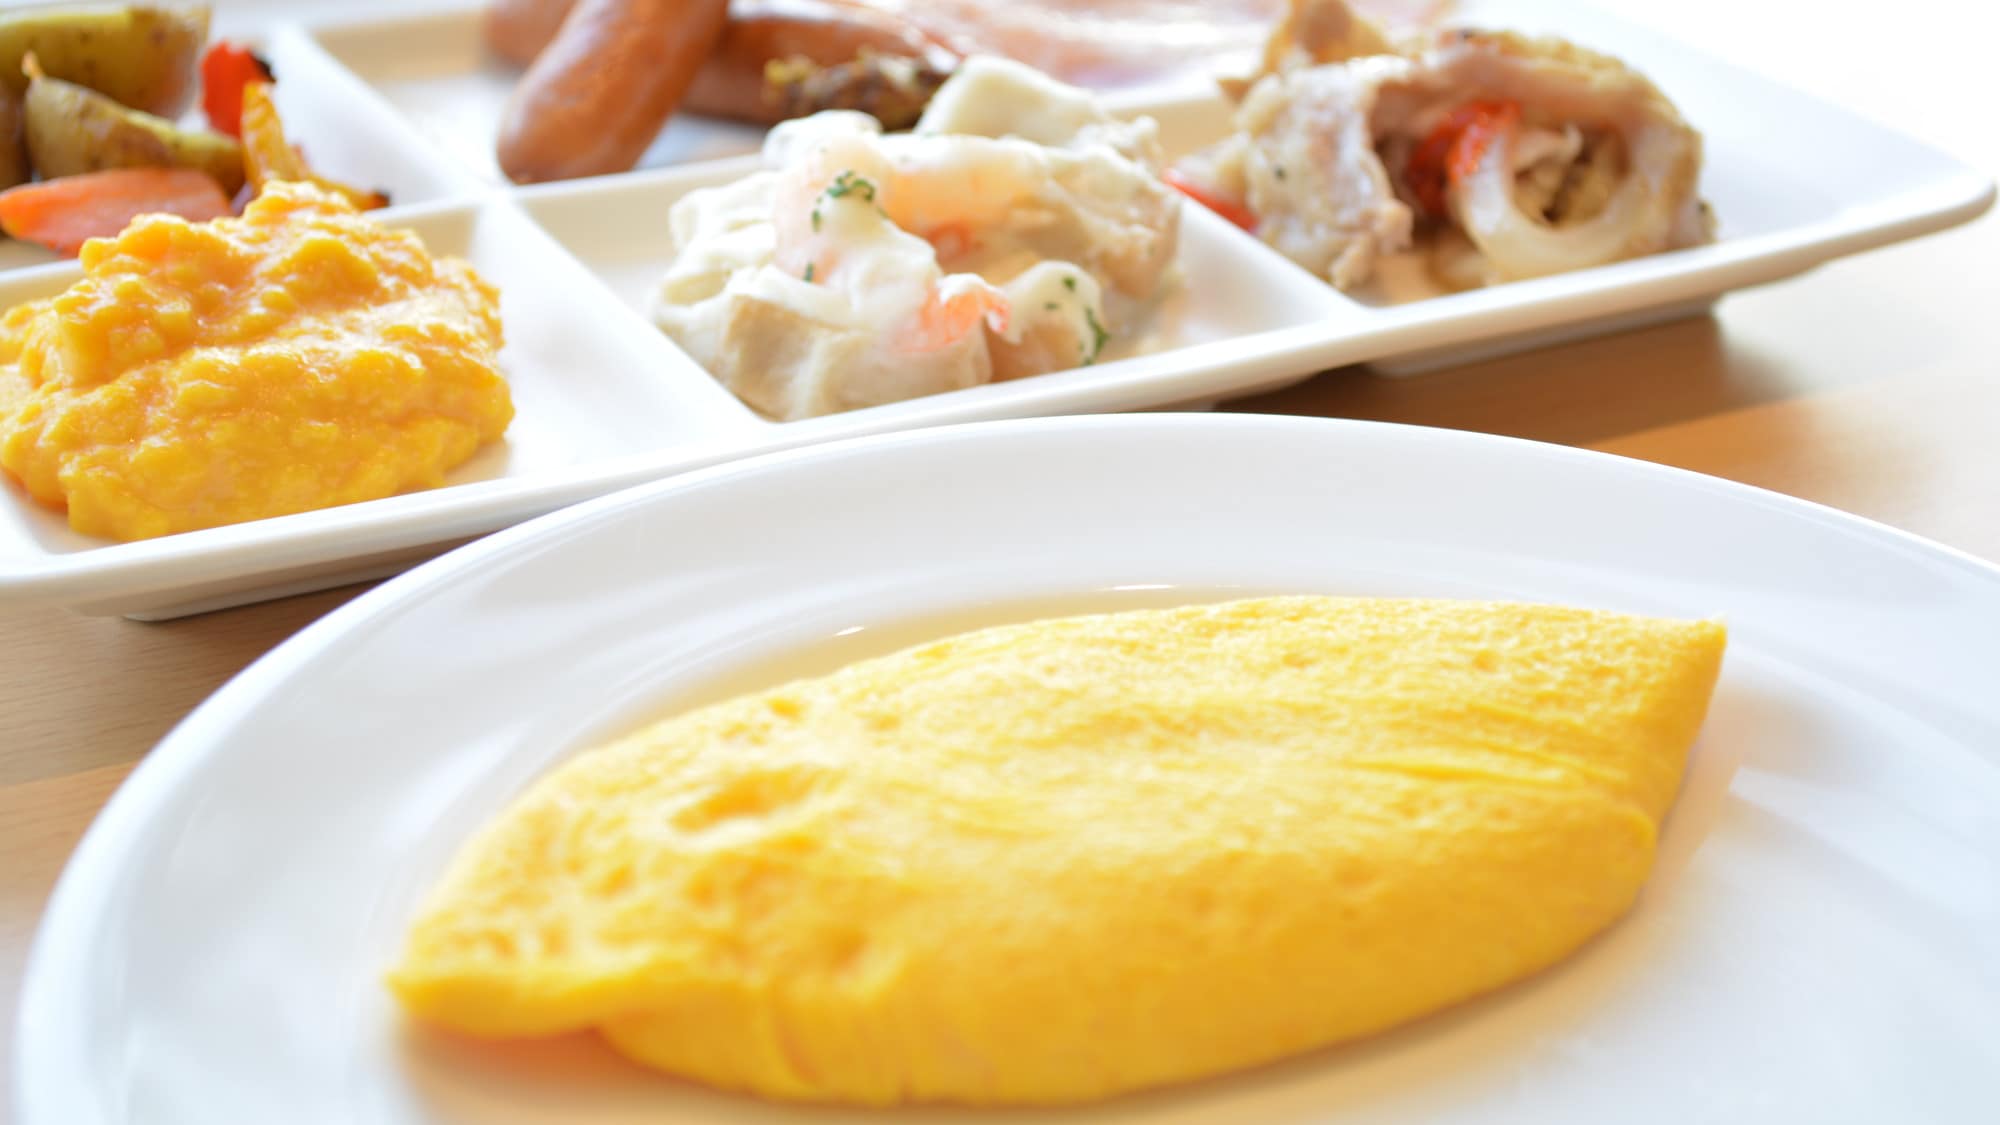 Kami merekomendasikan omelet dengan bahan-bahan lokal